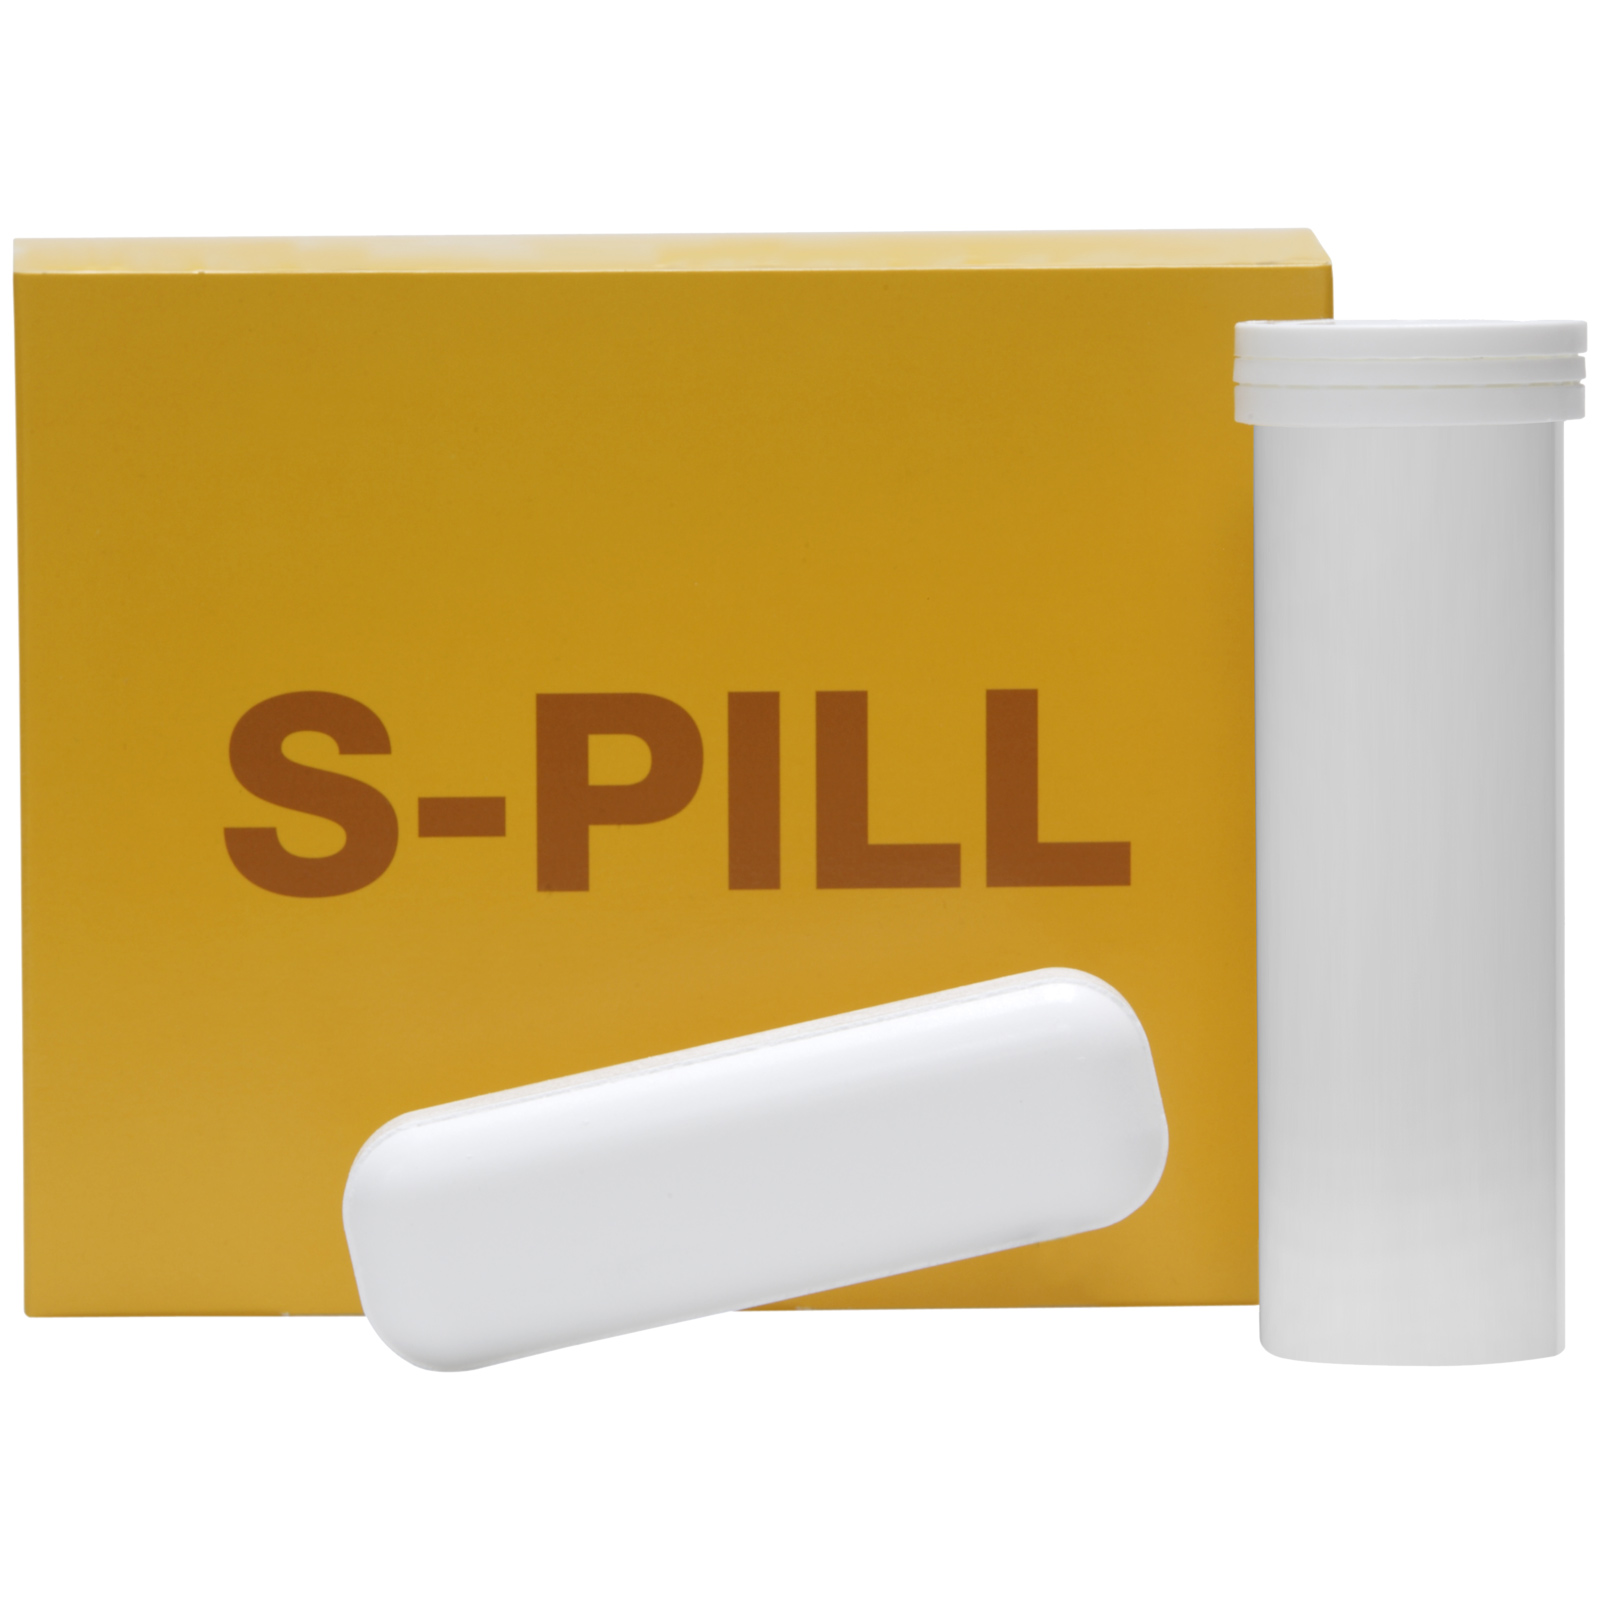 S-PILL pentru stimularea rumenului 4 x 100 g